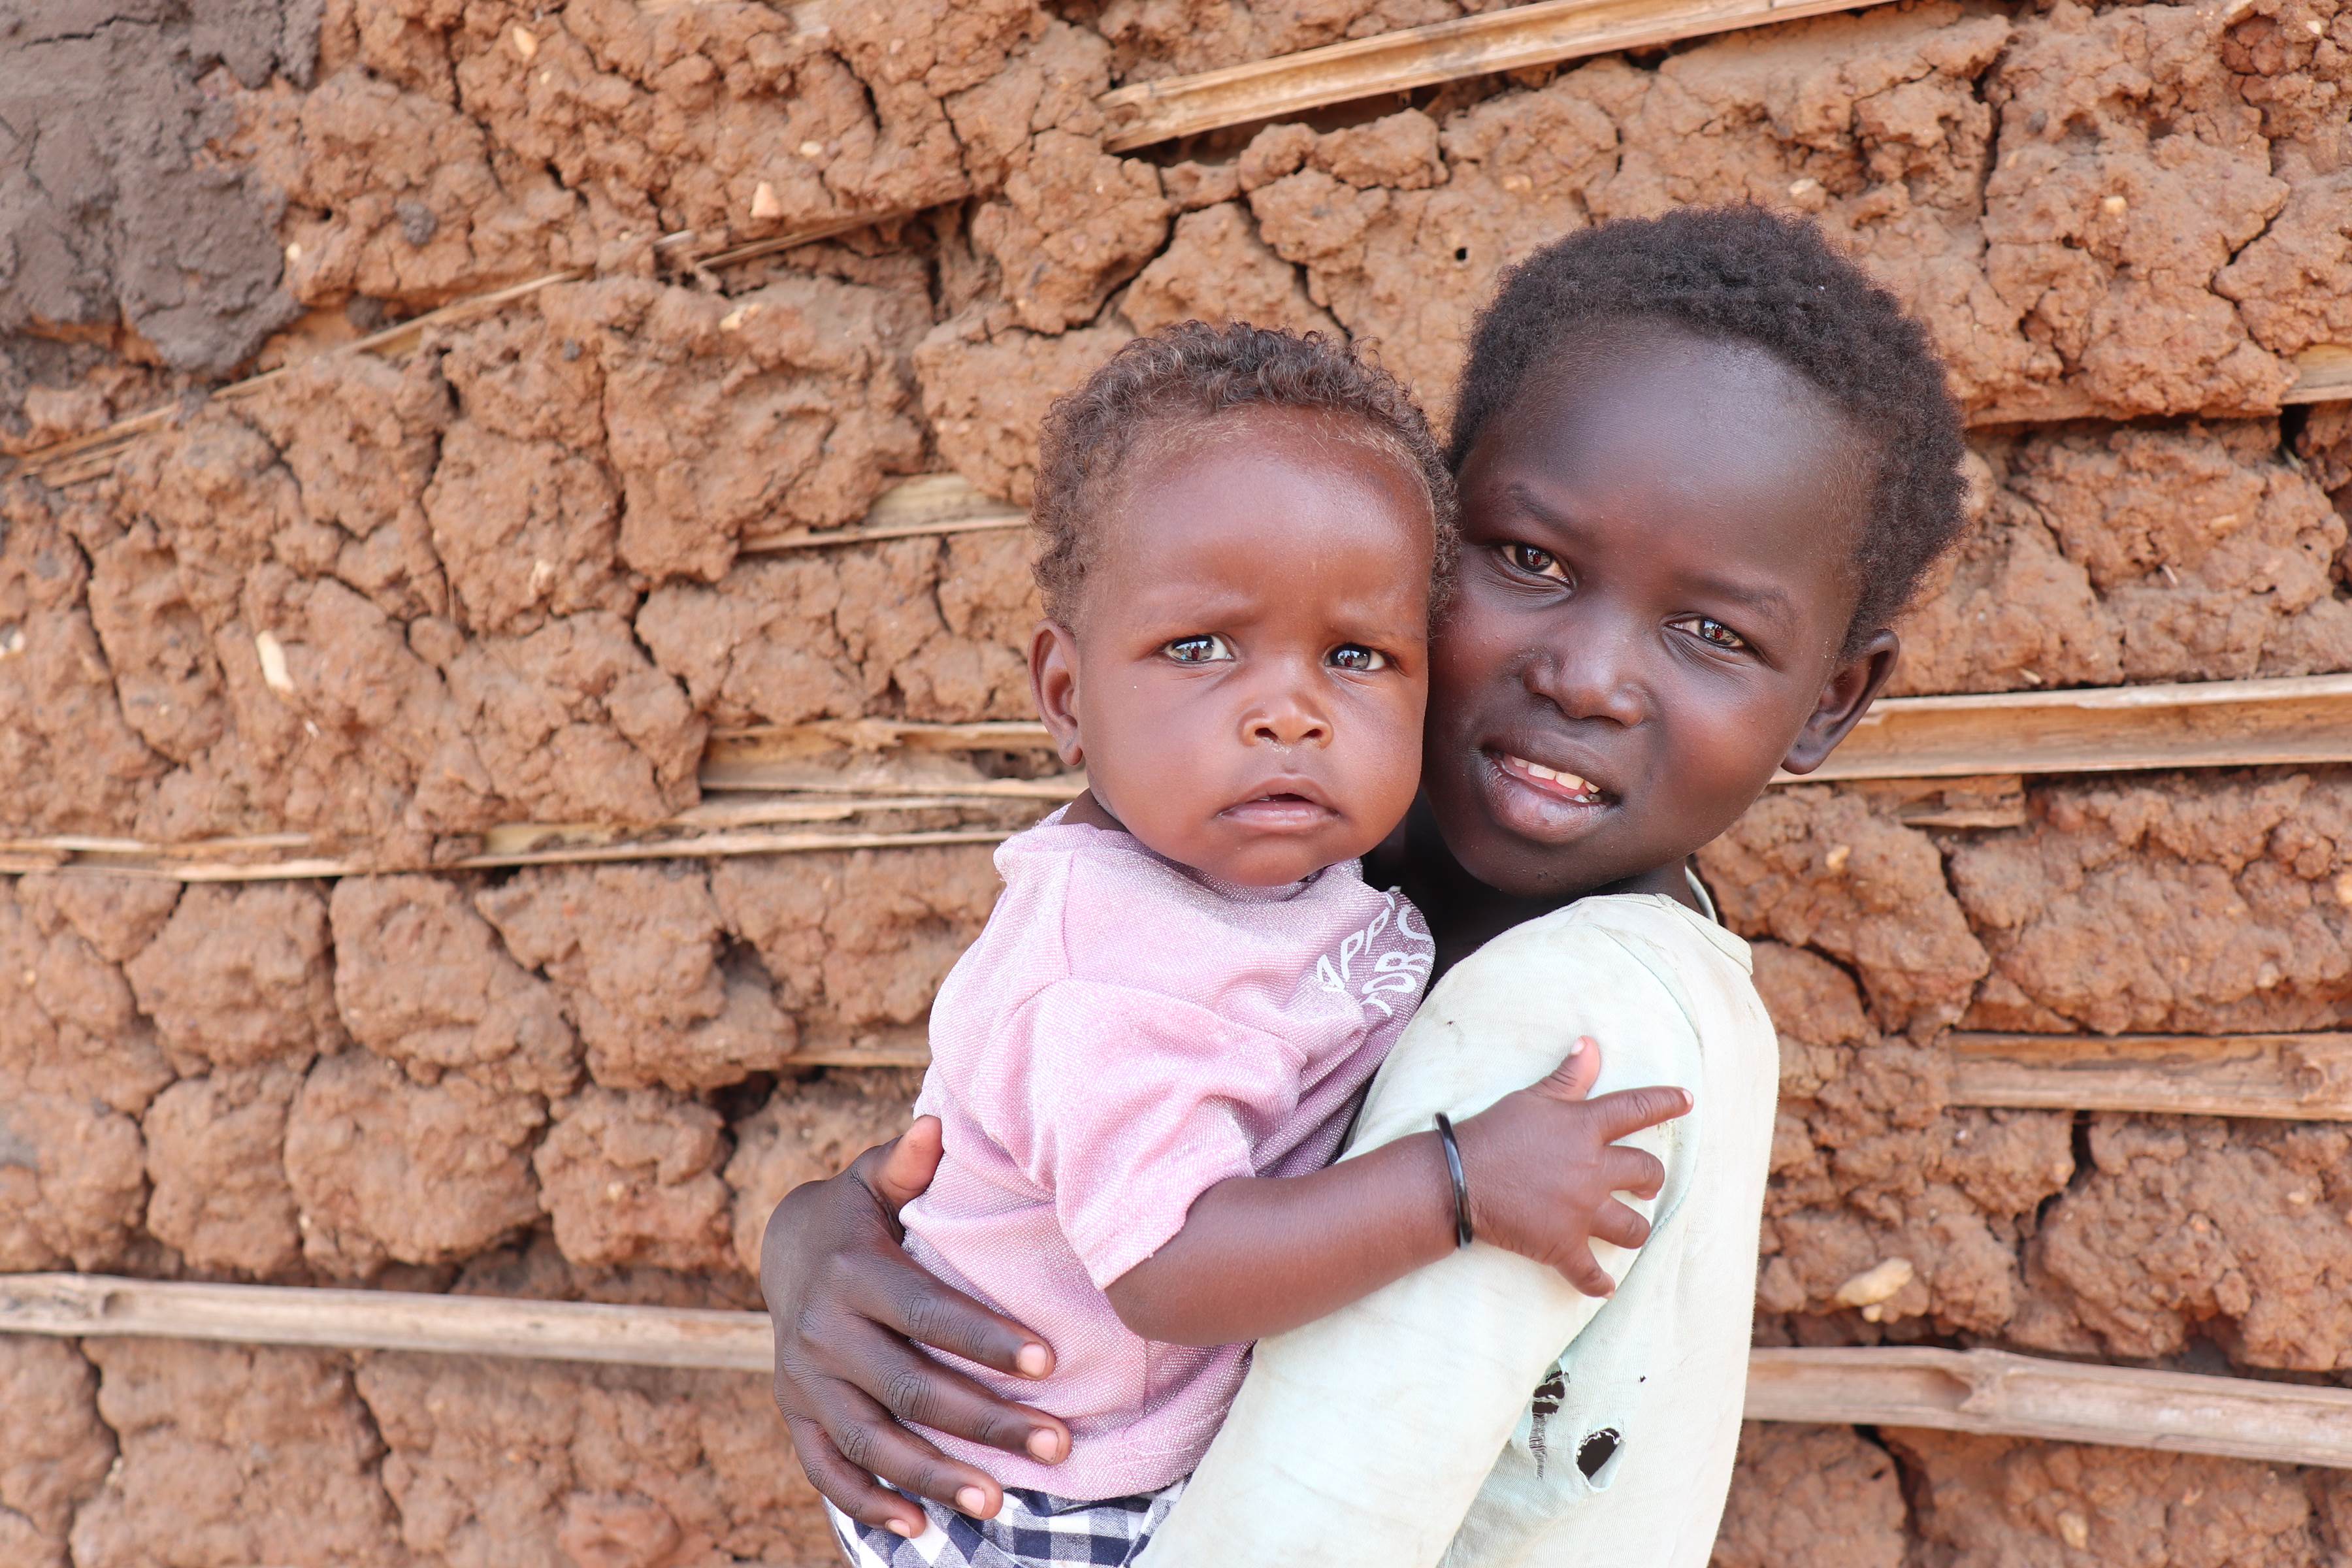 Un niño de ocho meses en Sudán del Sur abraza a un niño mayor sosteniéndolos, de pie frente a una pared